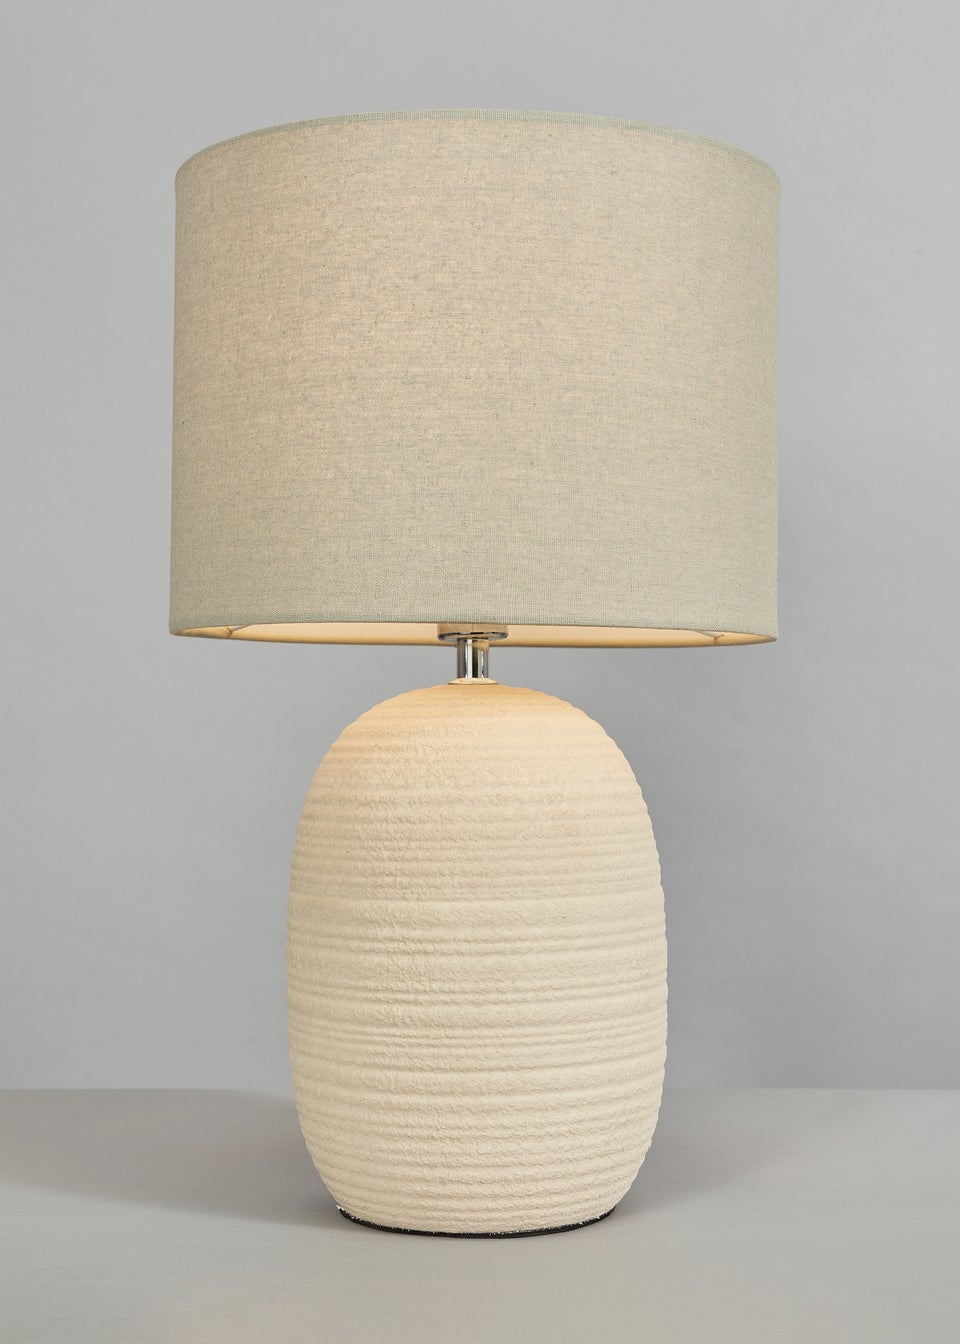 BHS Heath Ceramic Table Lamp Cream